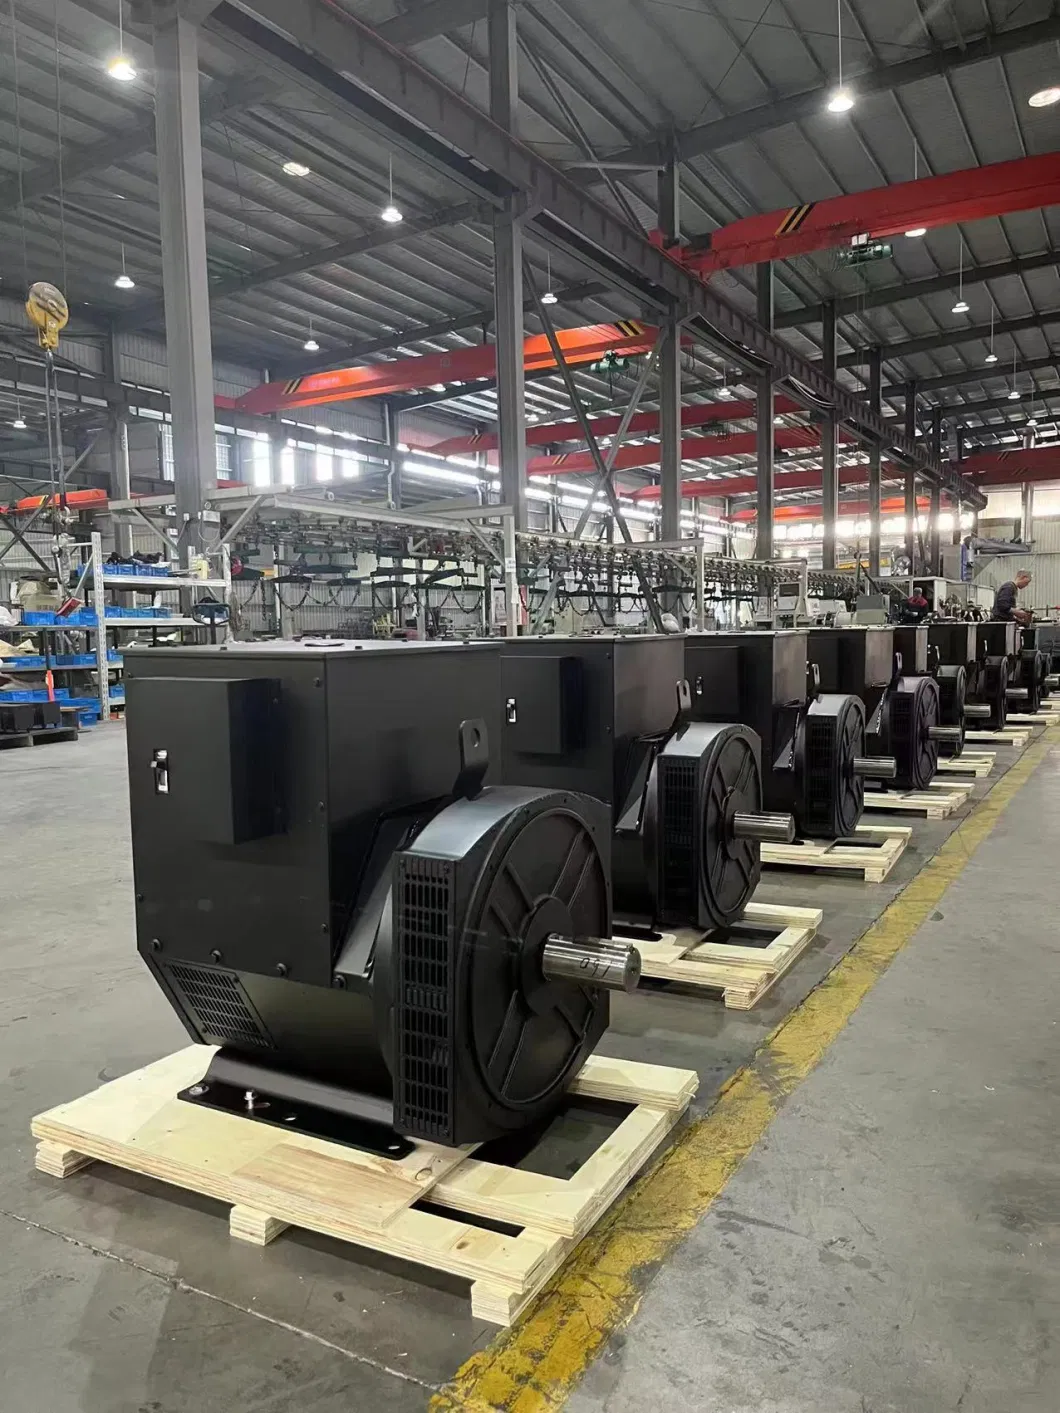 Low Price Diesel Synchronous Copy Stamford Technology Three Phase Brushless AC Power Alternator Generator 6.5kw -1000kw 220V230V380V400V50Hz60Hz in China